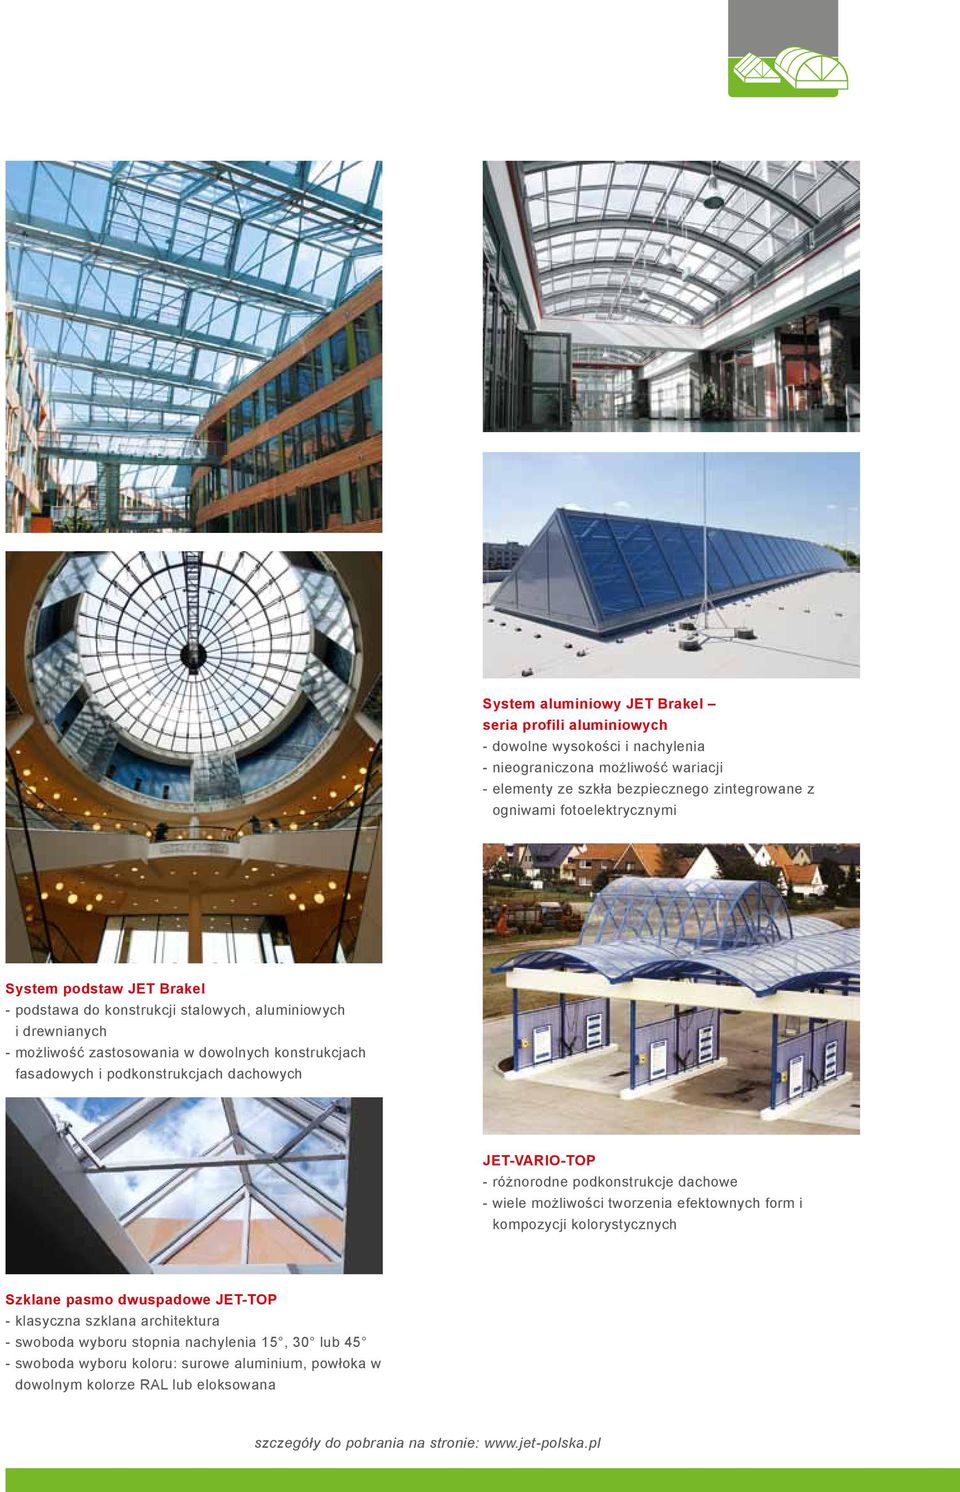 dachowych JET-VARIO-TOP - różnorodne podkonstrukcje dachowe - wiele możliwości tworzenia efektownych form i kompozycji kolorystycznych Szklane pasmo dwuspadowe JET-TOP - klasyczna szklana